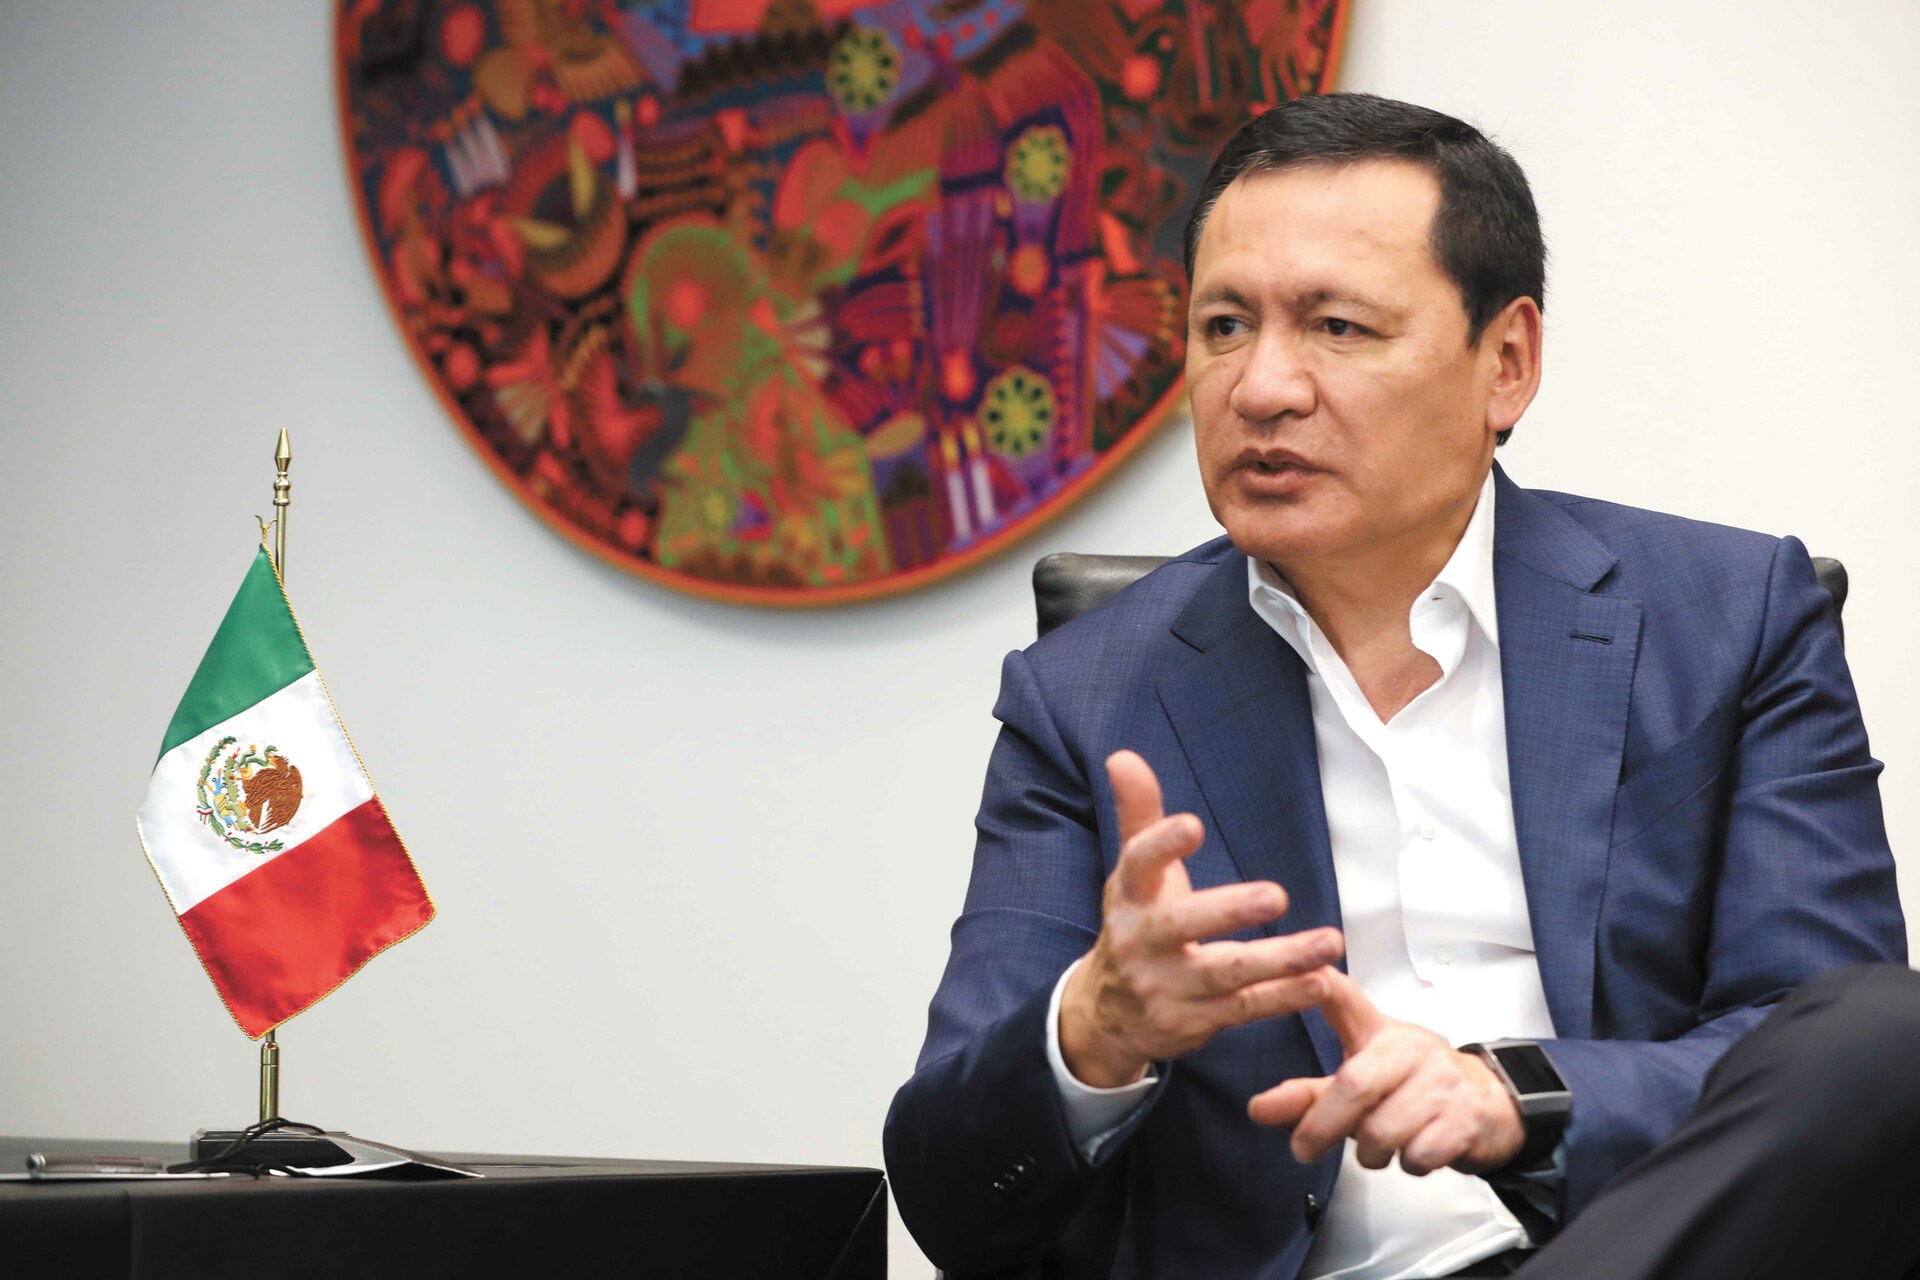 El exdelegado nacional del partido en Chiapas argumentó que Osorio Chong promueve la división del PRI, además de ser oposición al tricolor, al apoyar a Morena y al gobierno del presidente López Obrador. (ARCHIVO)